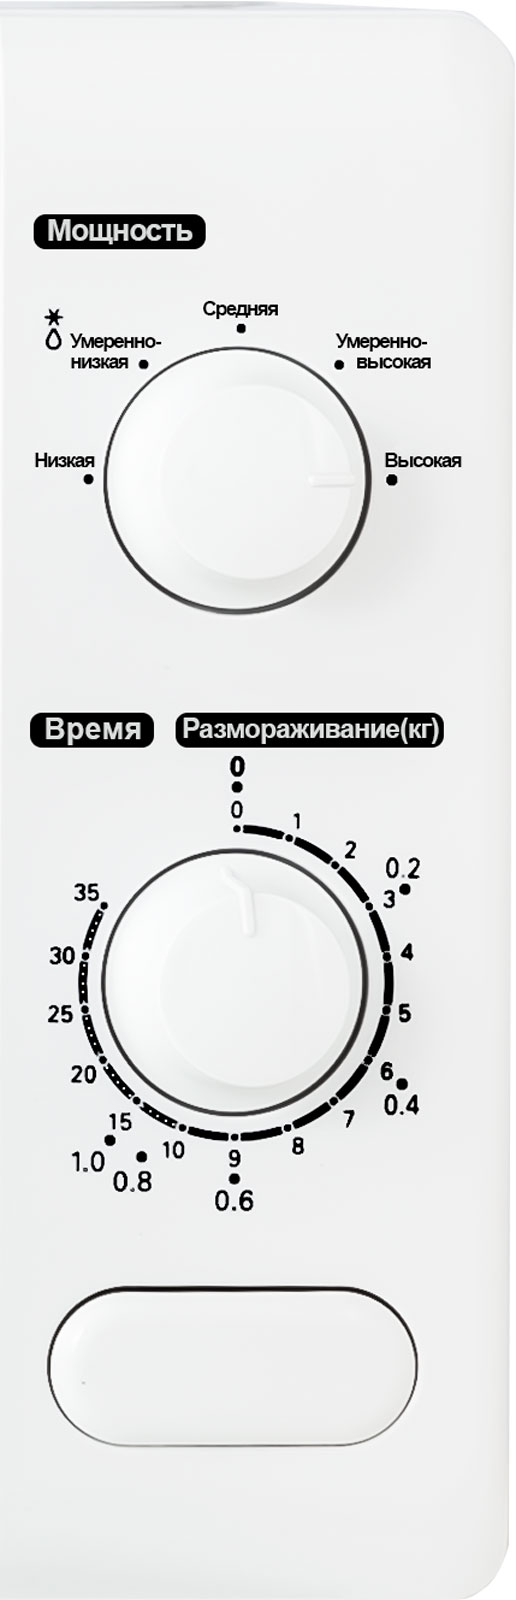 Картинка Микроволновая печь NATIONAL NK-MW111M20 по разумной цене купить в интернет магазине mall.su